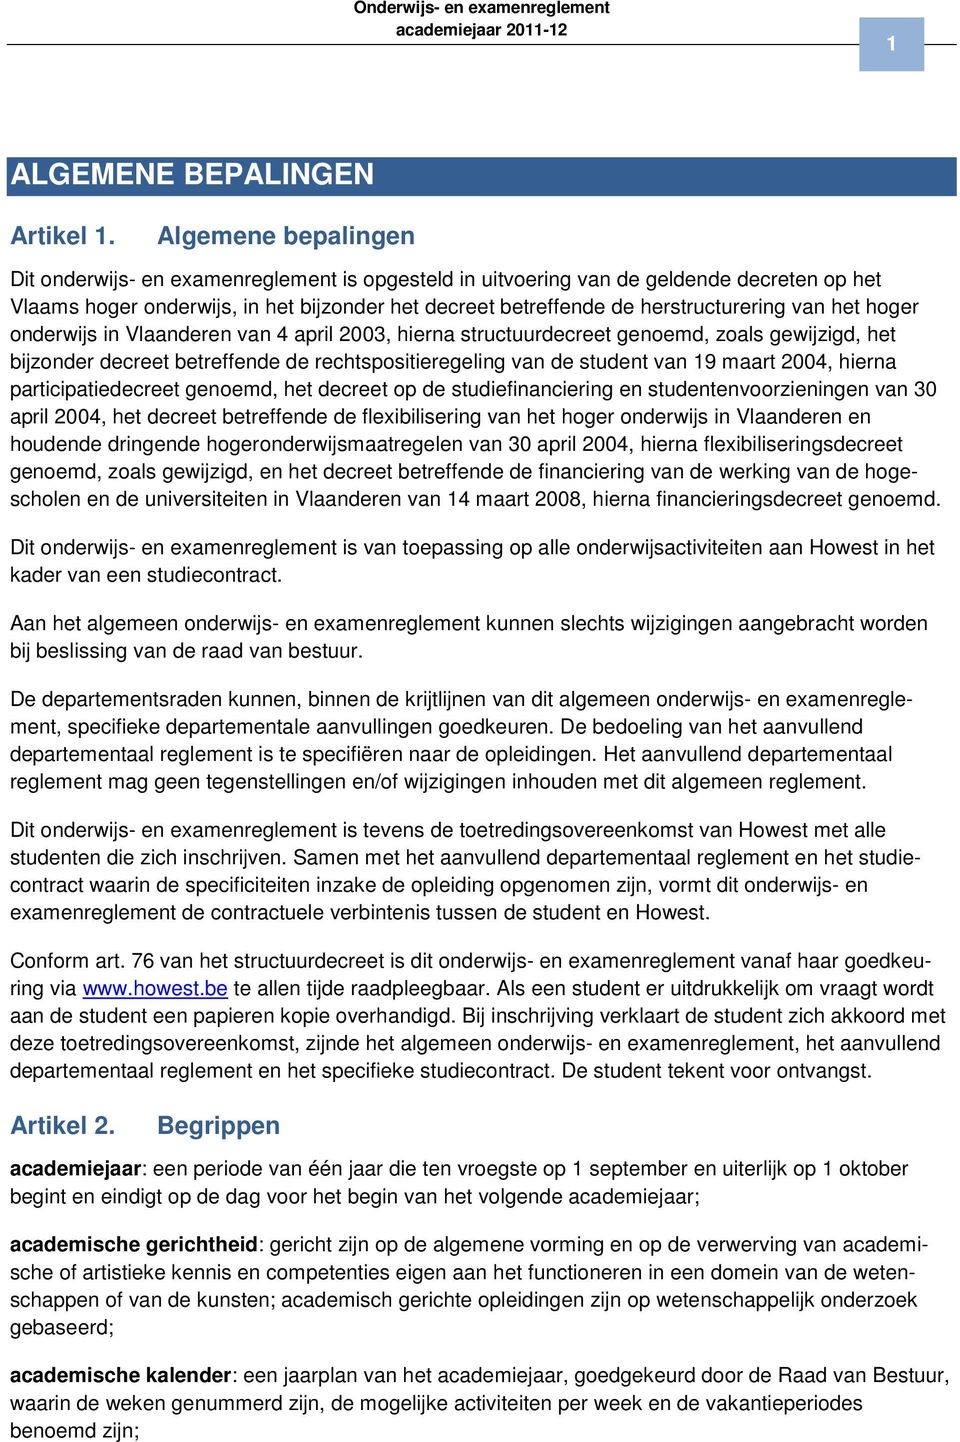 van het hoger onderwijs in Vlaanderen van 4 april 2003, hierna structuurdecreet genoemd, zoals gewijzigd, het bijzonder decreet betreffende de rechtspositieregeling van de student van 19 maart 2004,